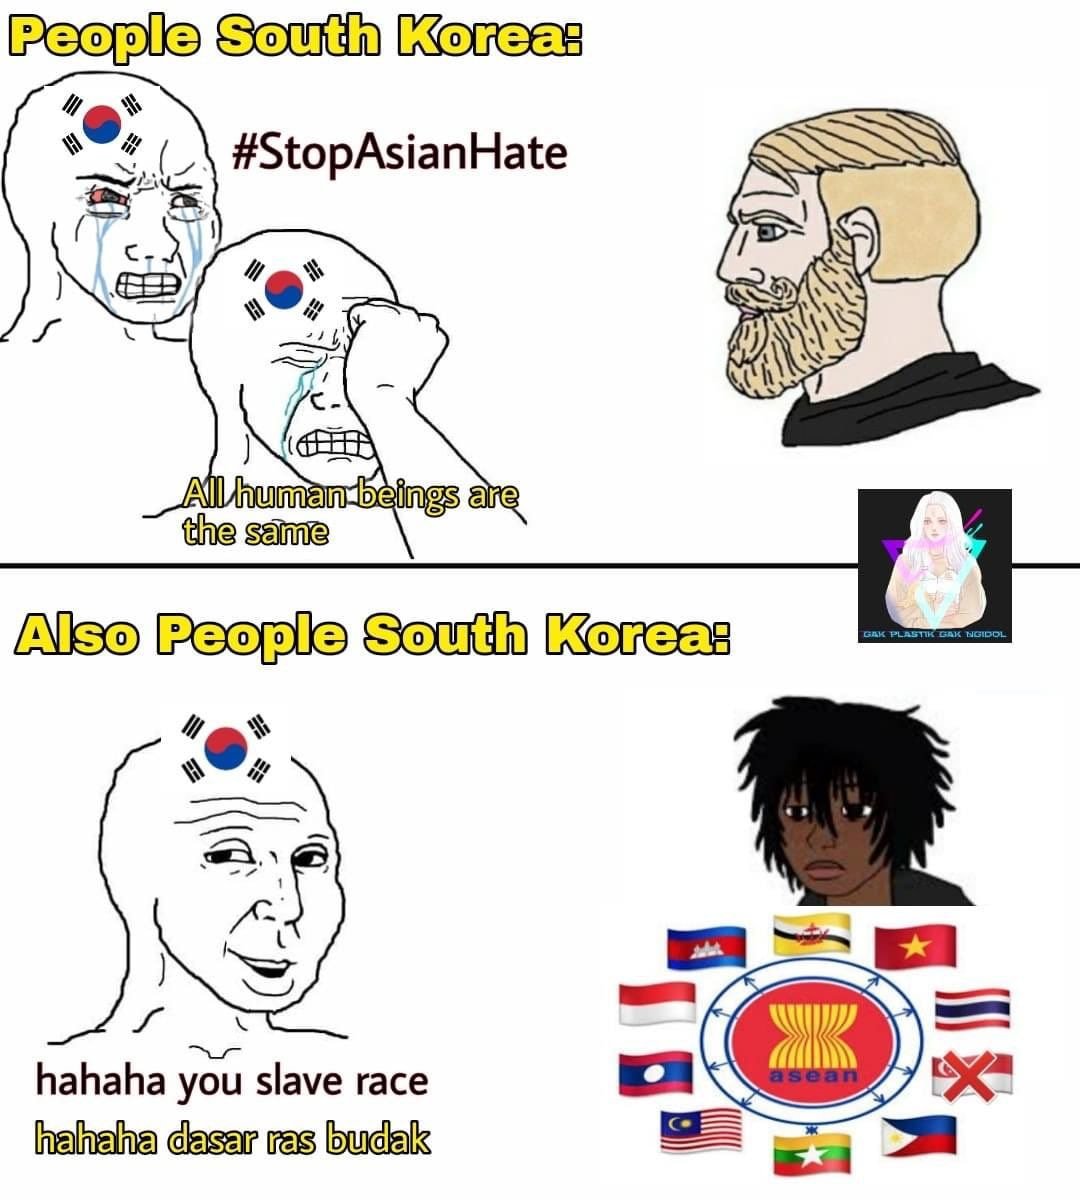 동남아 네티즌 사이에서 돌고있는 한국인 인종차별 밈